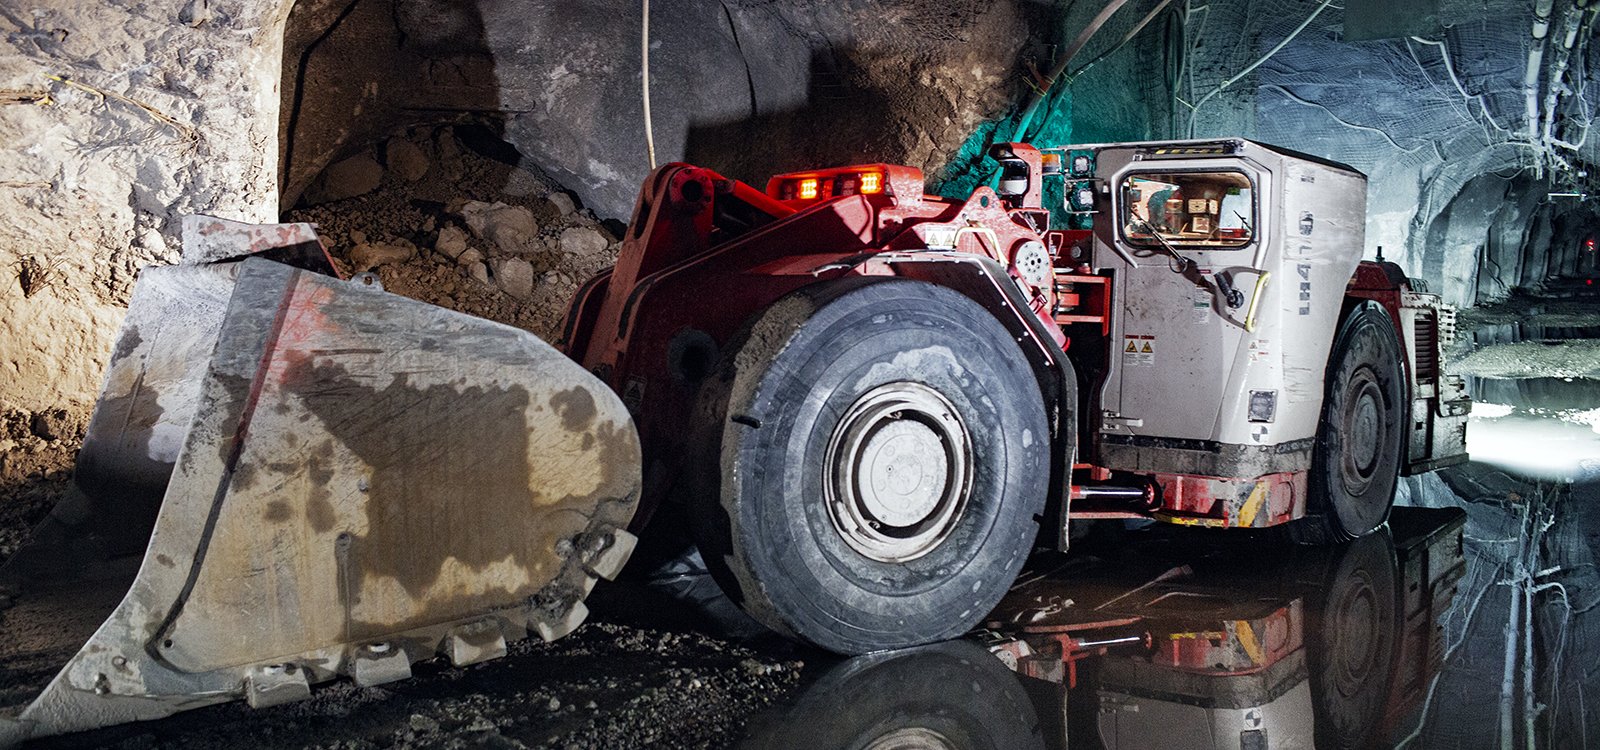 Уменьшение опасности прорыва обводненной горной массы было основным мотивирующим фактором для внедрения автоматизированной погрузки на руднике Нью-Афтон.